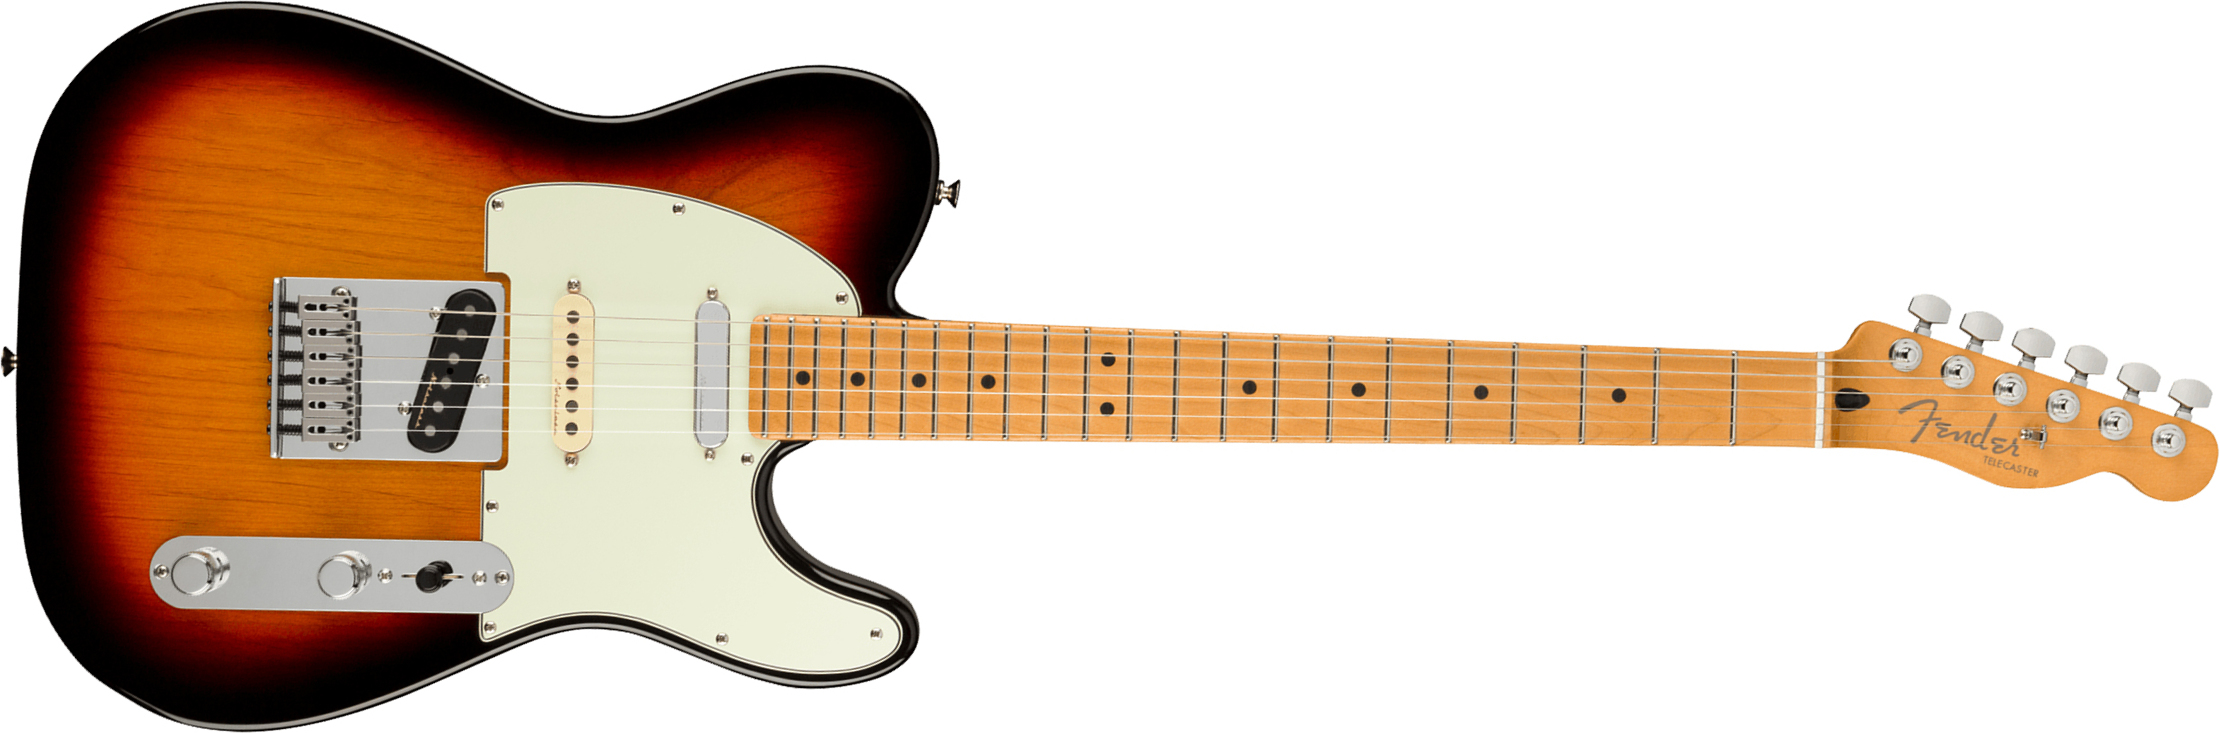 Fender Tele Player Plus Nashville Mex 3s Ht Mn - 3-color Sunburst - Tel shape electric guitar - Main picture